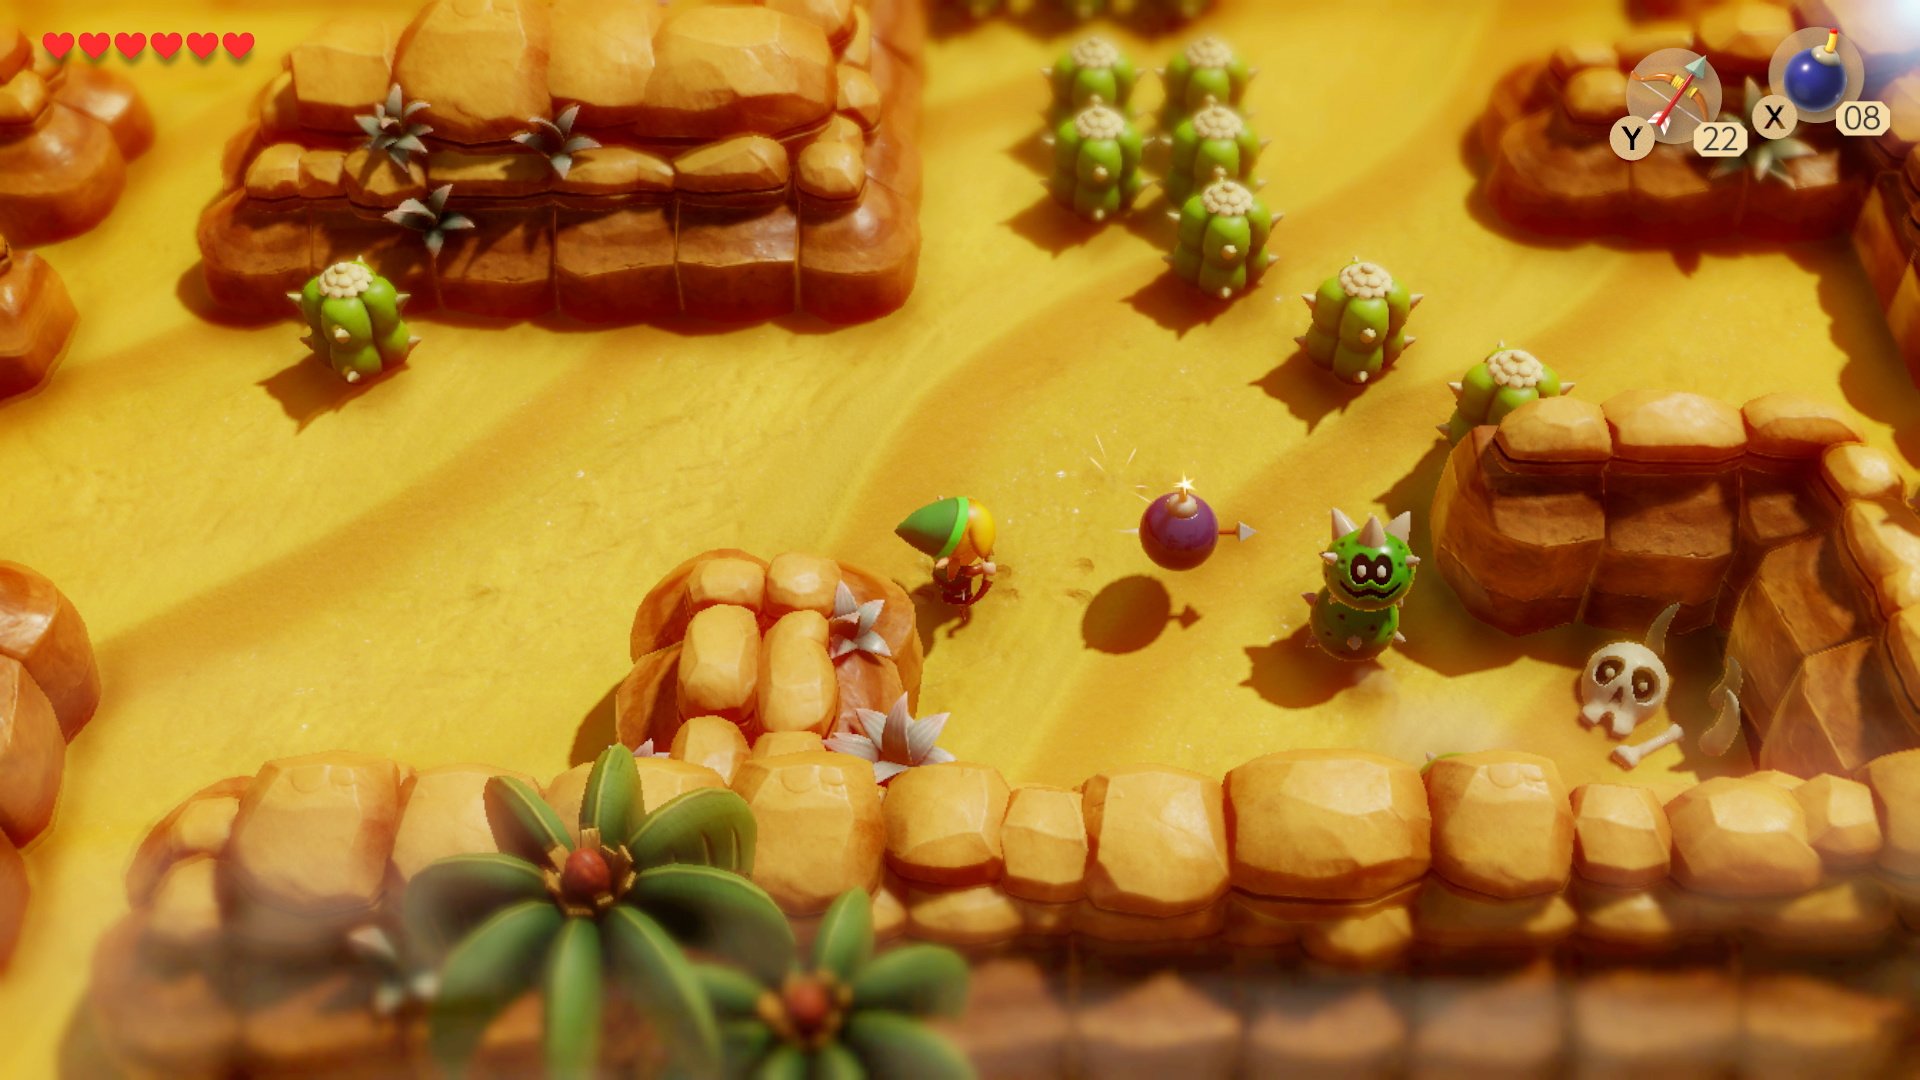 Review: The Legend of Zelda: Link's Awakening